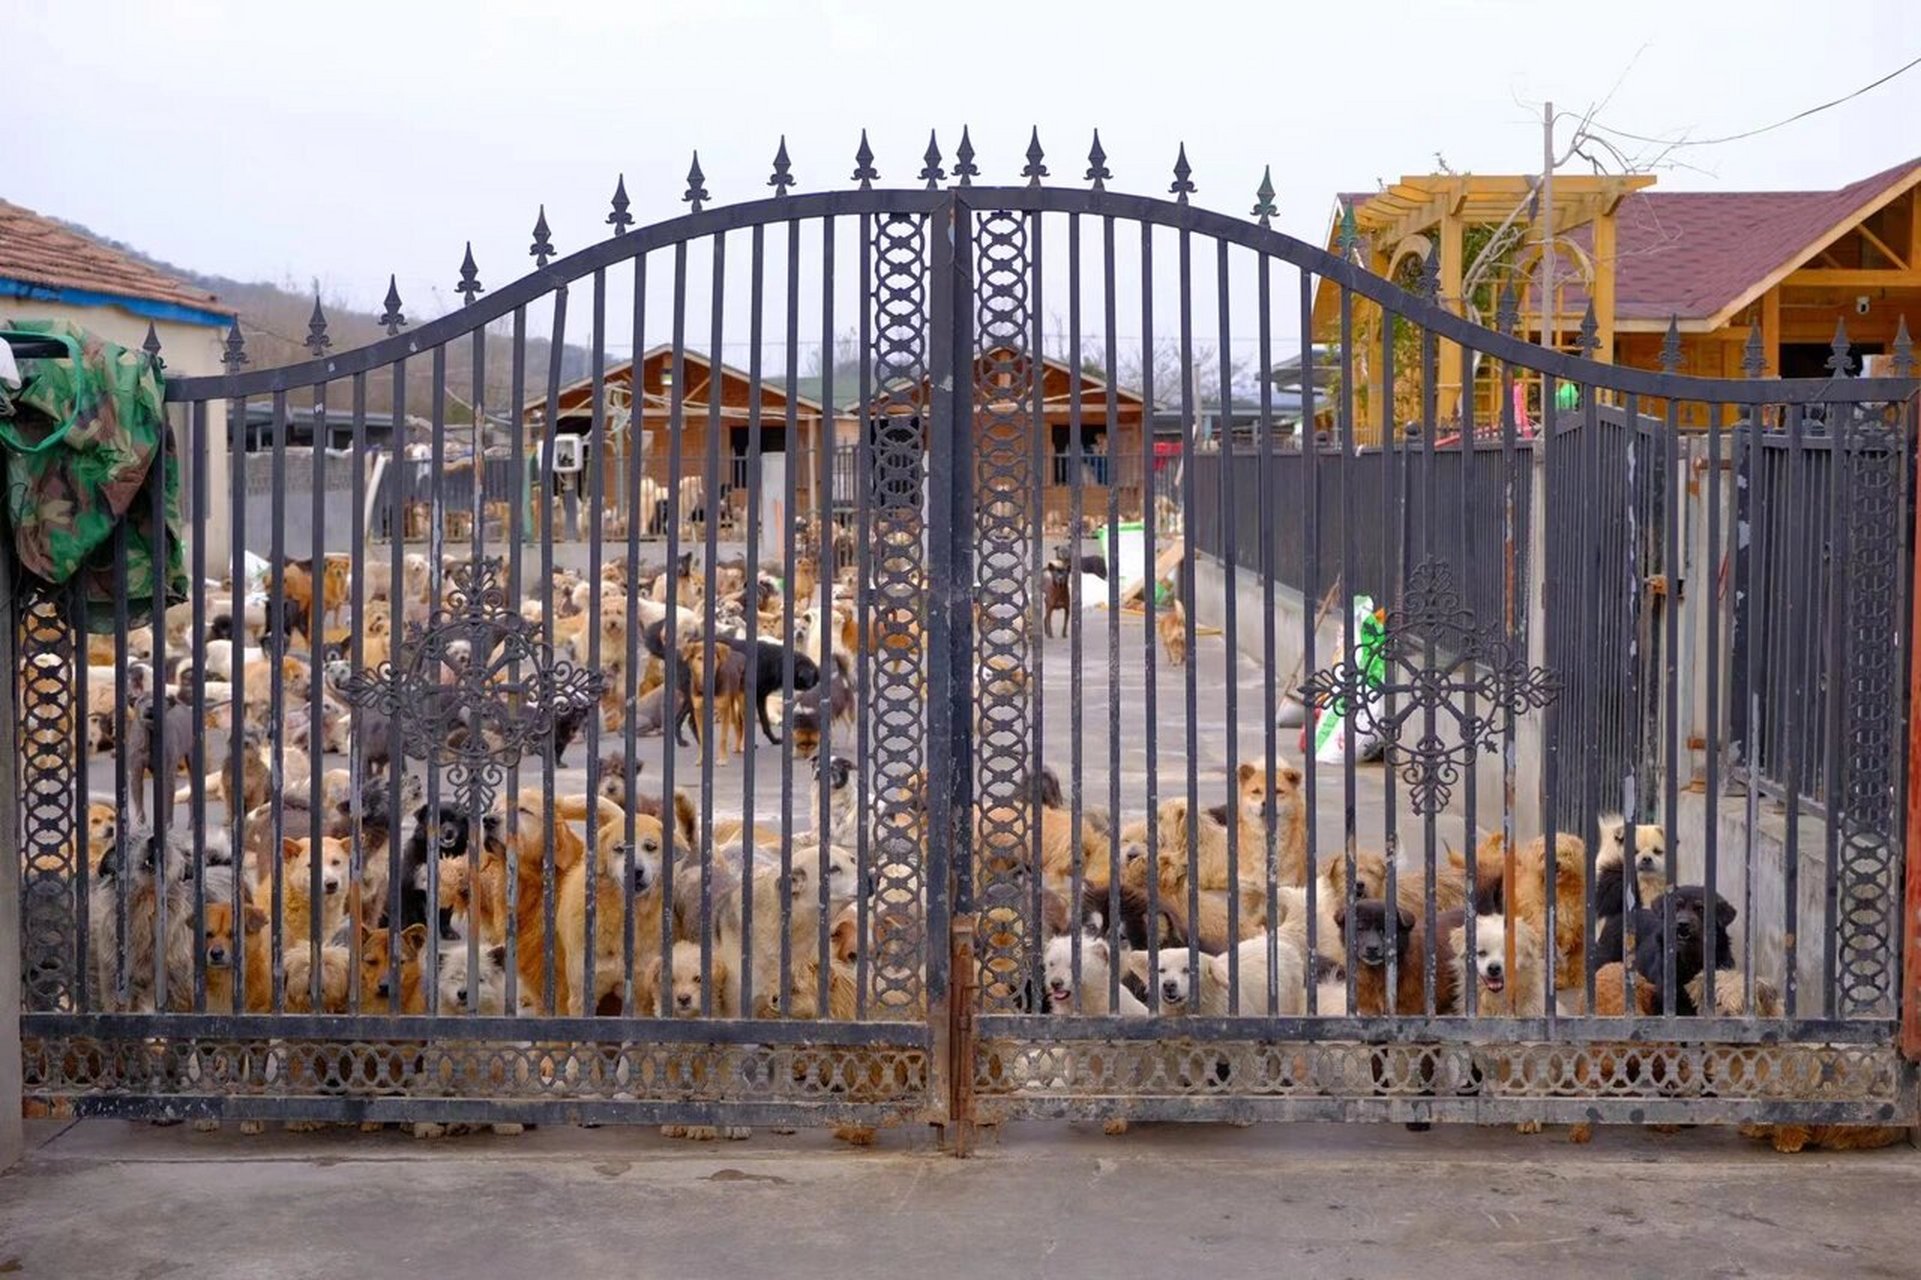 看到它们的时候还是很震撼 走访了宁波的一些流浪狗救助站 依次去了